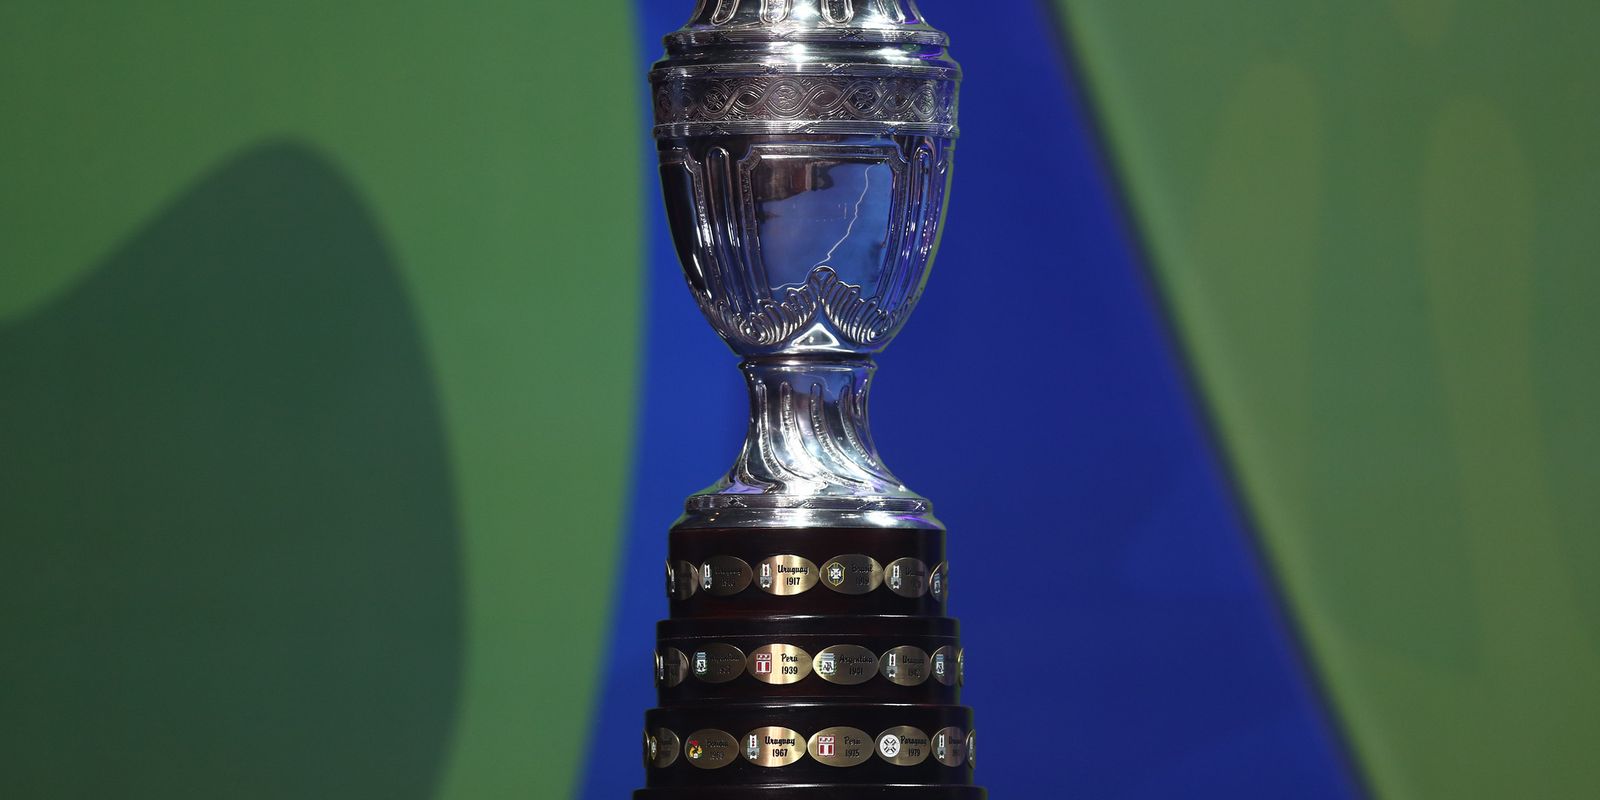 ⚽ Copa Paulista 2022 ⚽ - Associação Paulista de Futebol